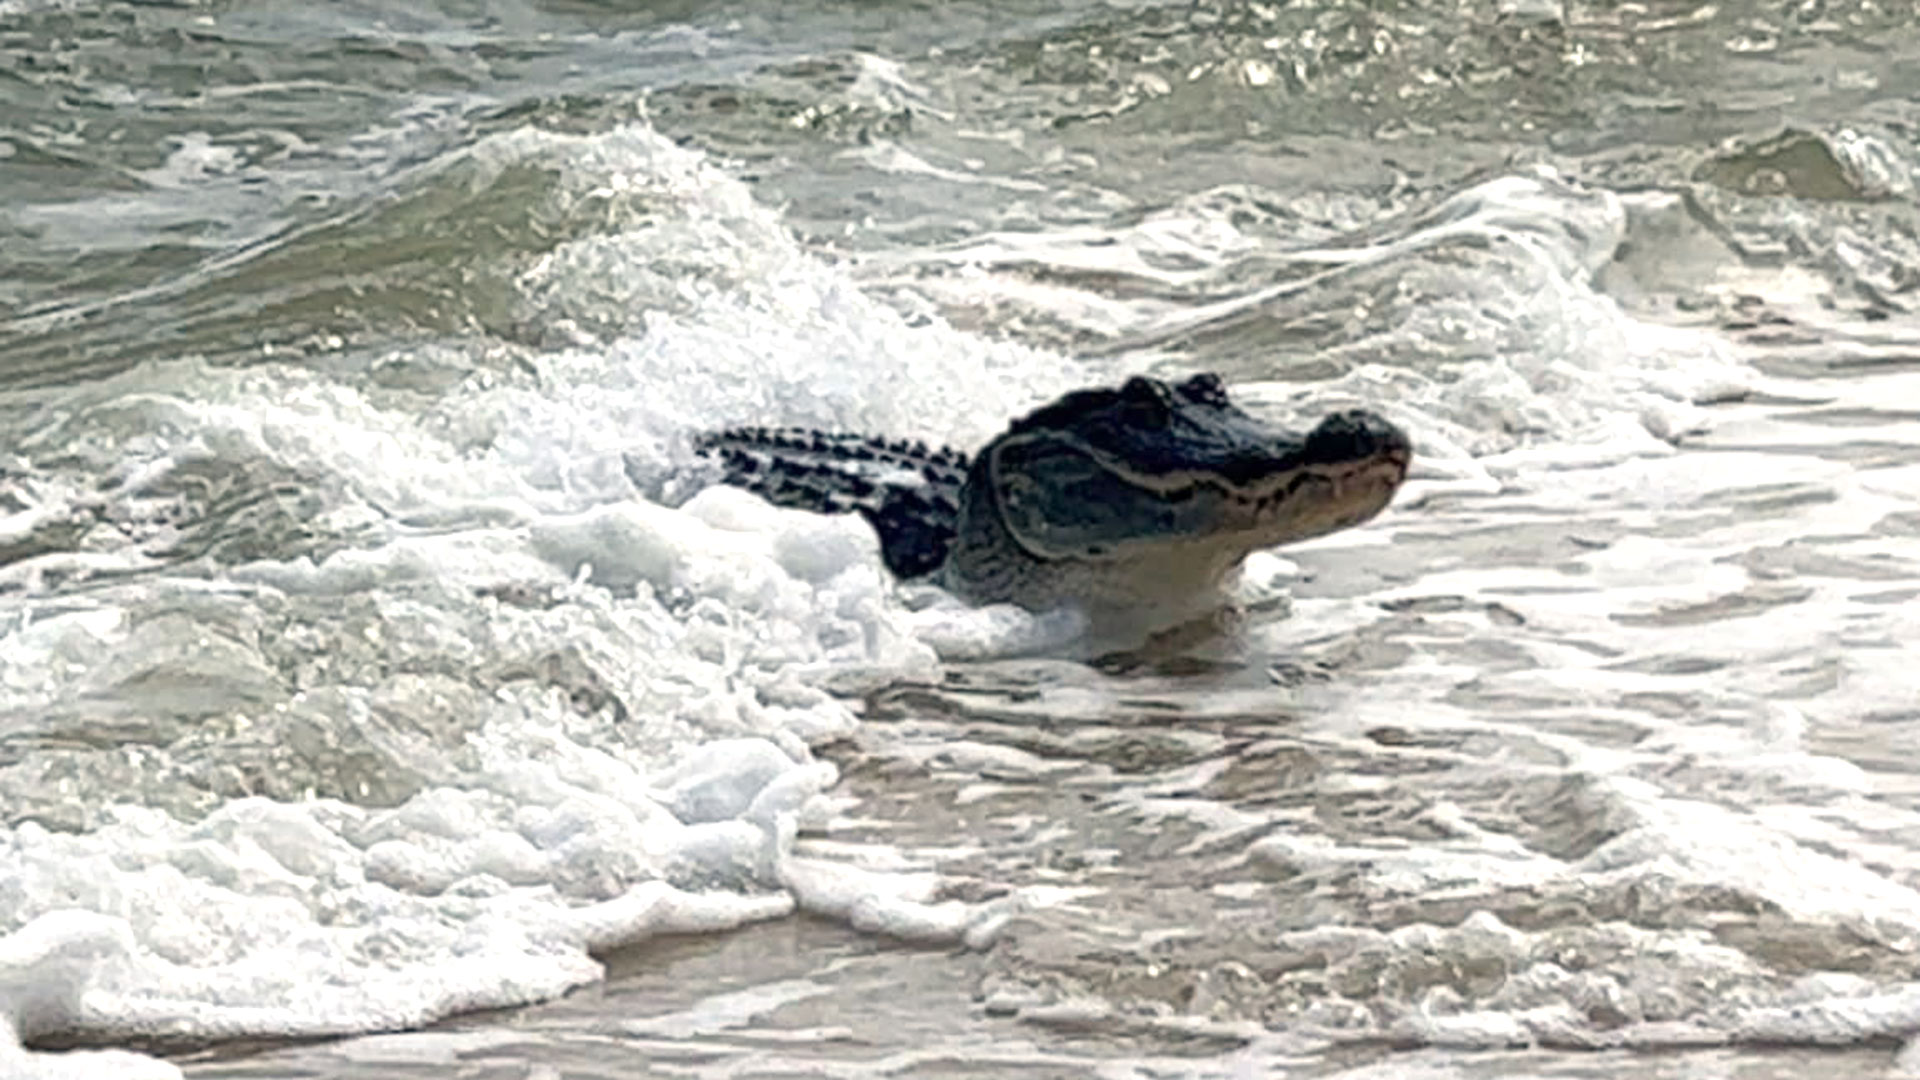 Un caimán sorprendió y causó pánico entre los bañistas de una playa de Alabama